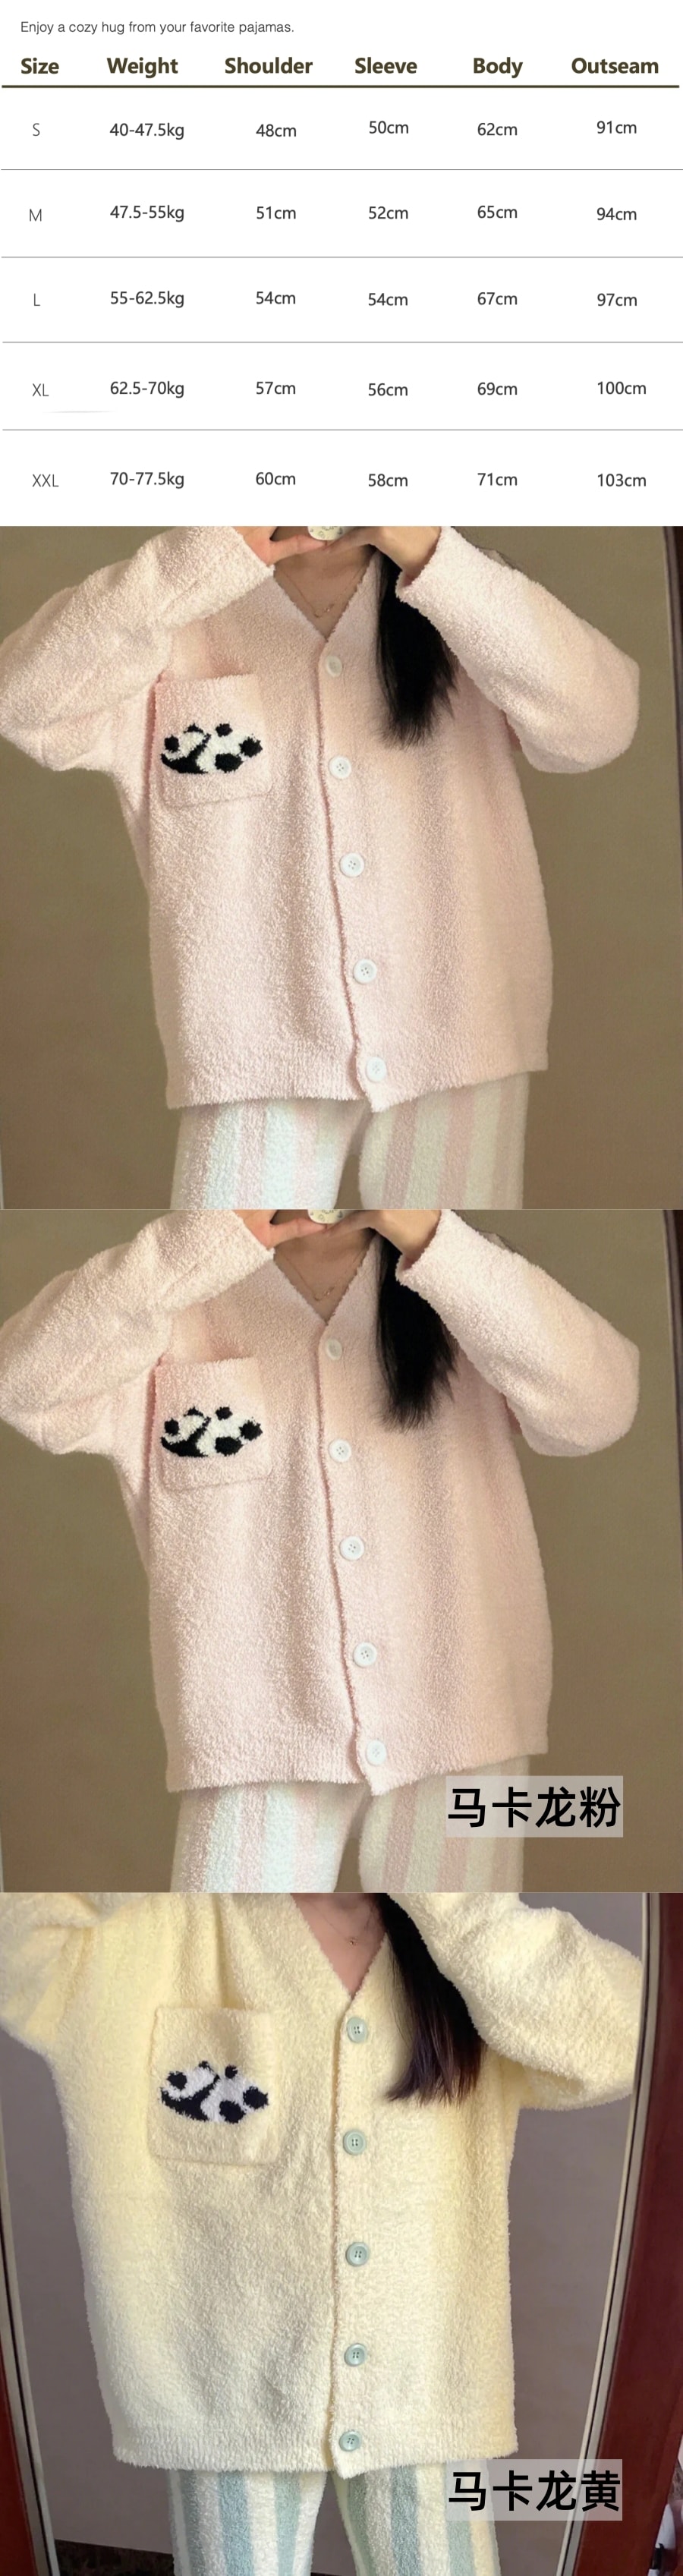 【中国直邮】Lullabuy 马卡龙趴趴熊猫牛奶绒保暖睡衣床上用品秋冬睡衣居家可爱睡衣 马卡龙粉 S Size